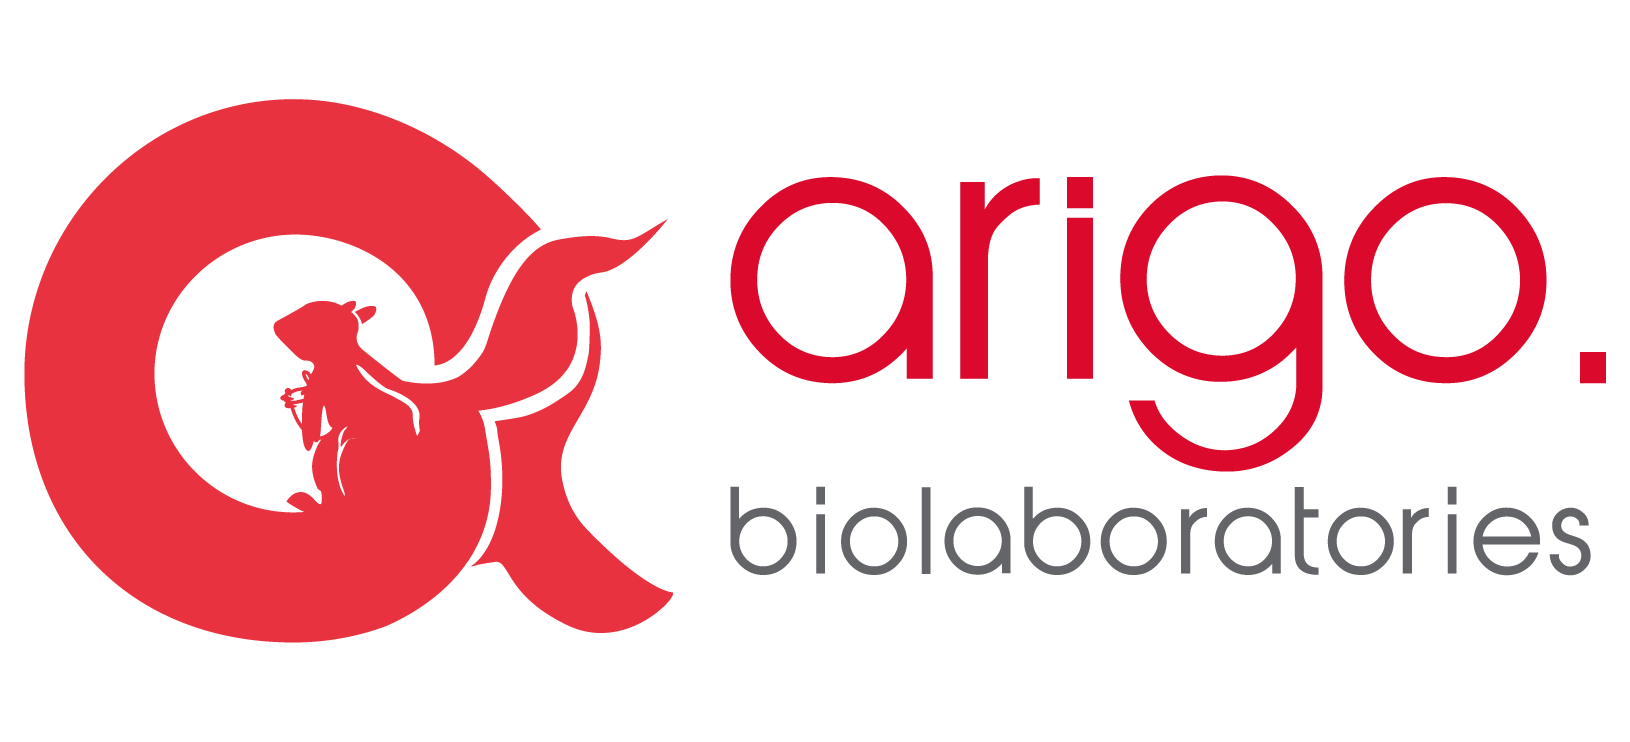 Arigo Biolaboratories - Antibodies, antibody duos, ELISA